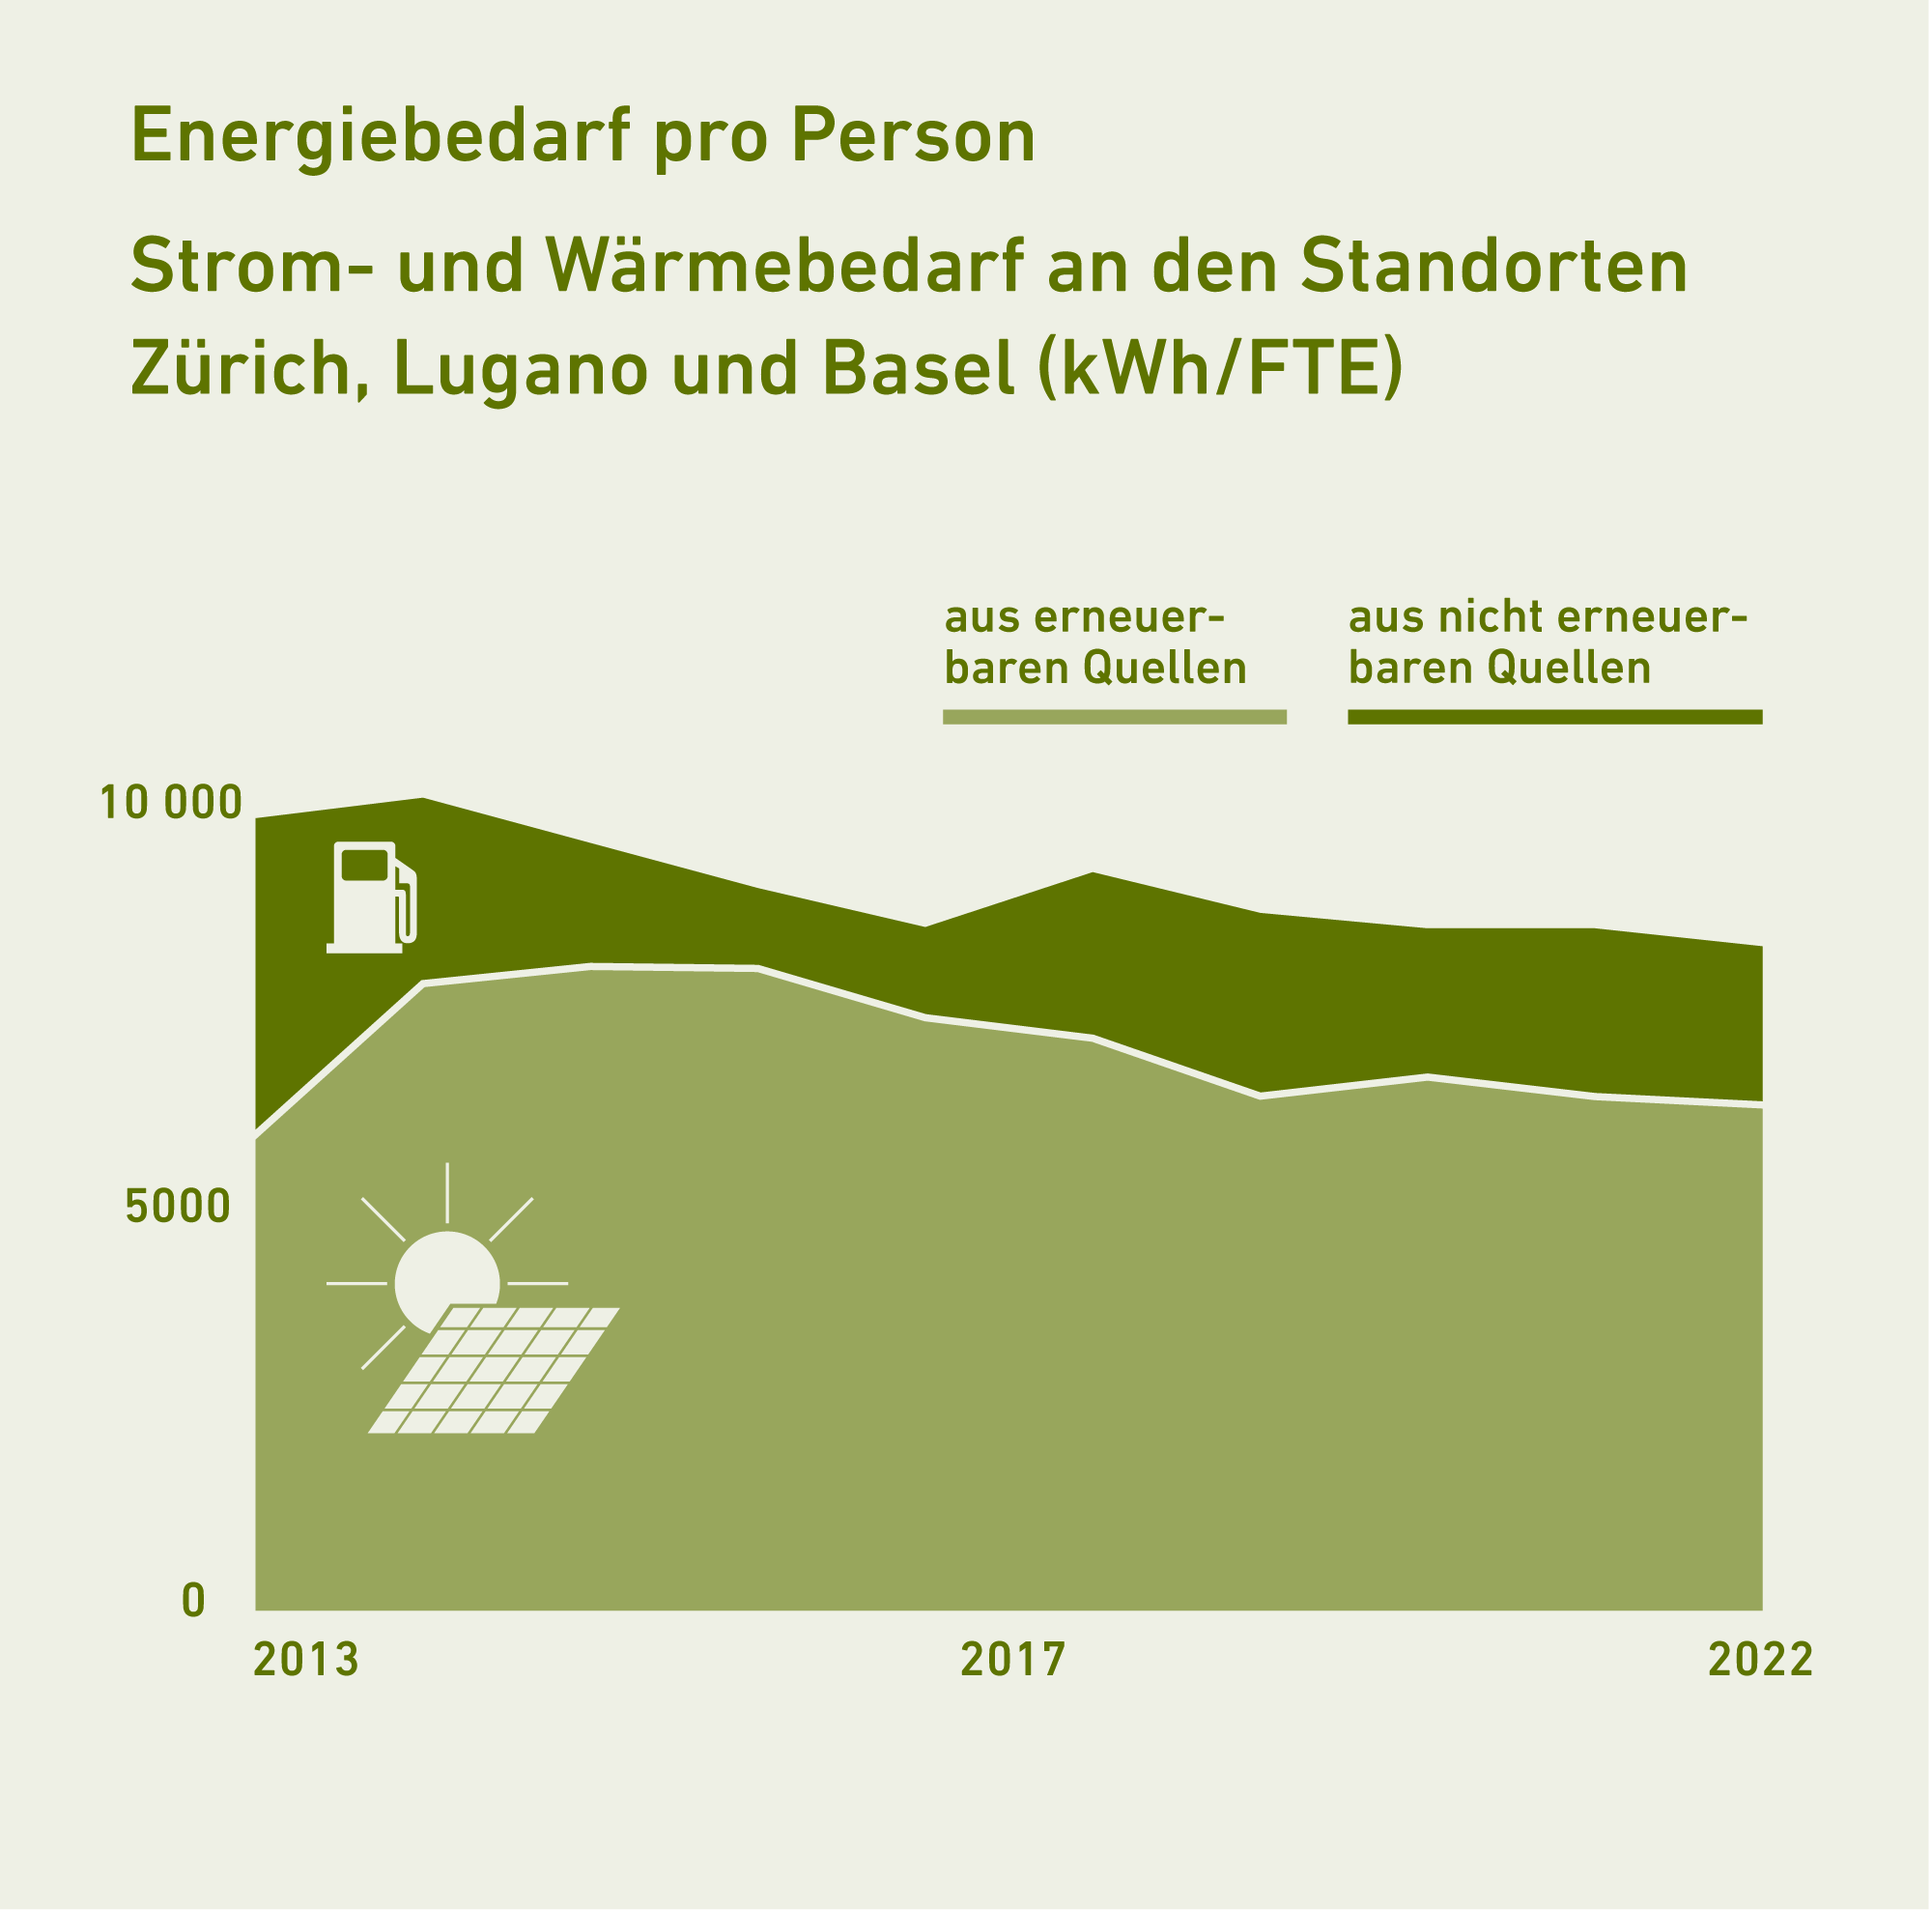 Vergr?sserte Ansicht: Die Grafik zeigt den Energieverbrauuch pro Person an der ETH Zürich.